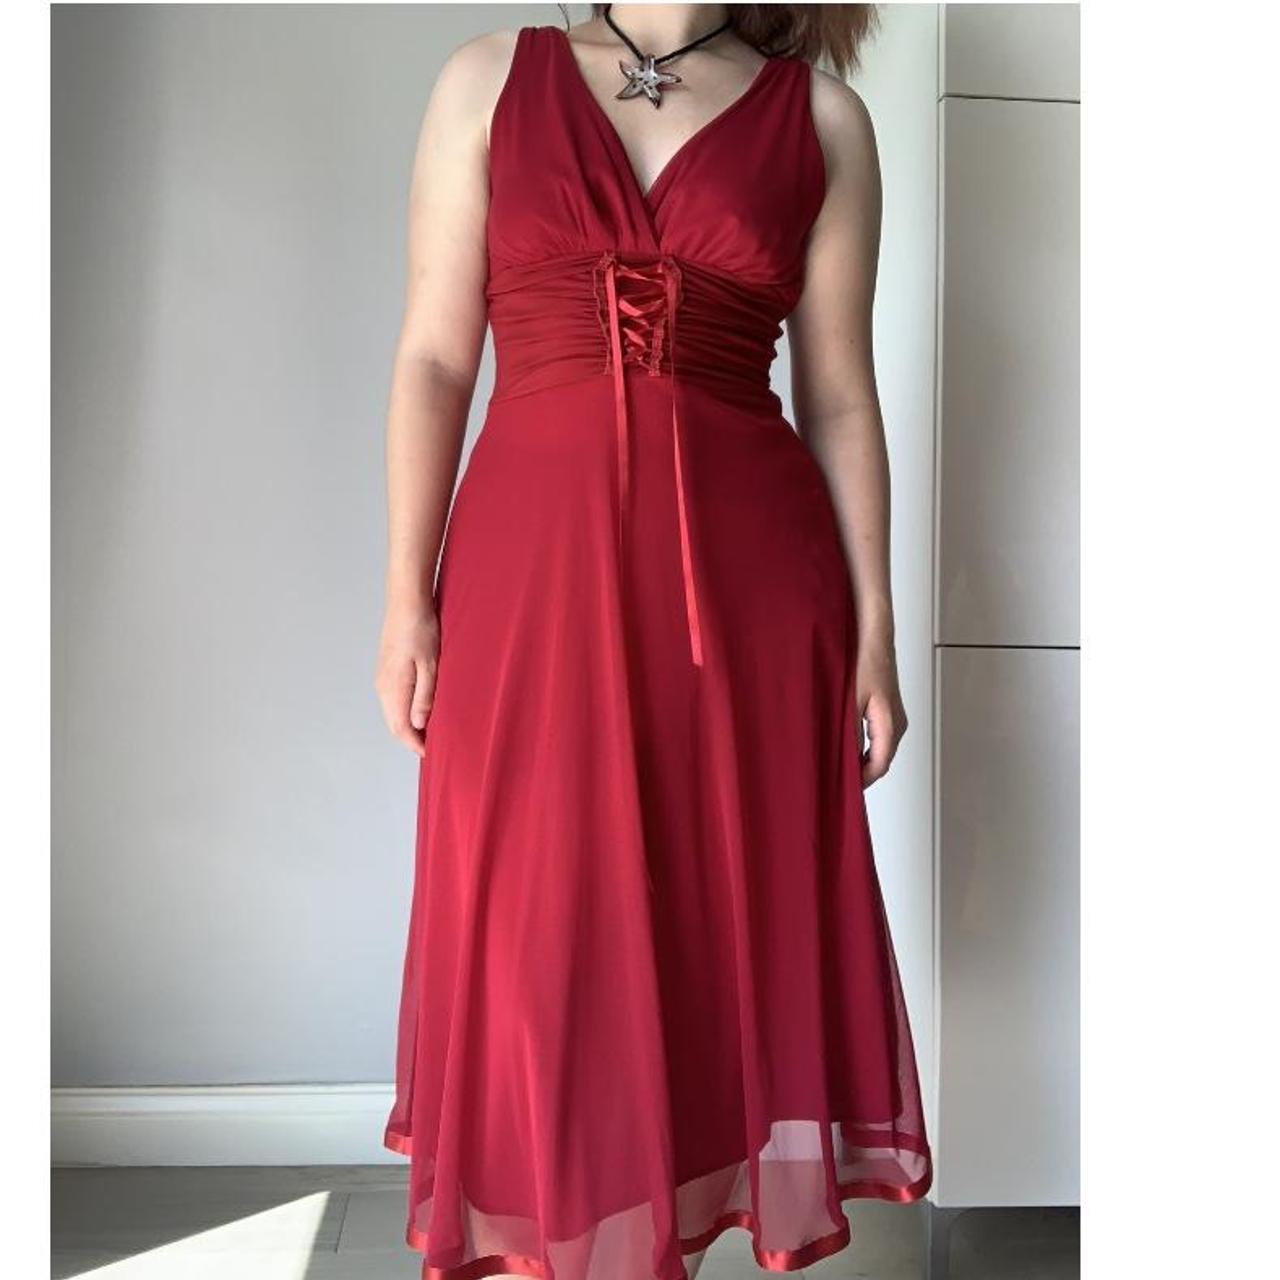 Vintage Y2k red dress with corset detailing Size... - Depop